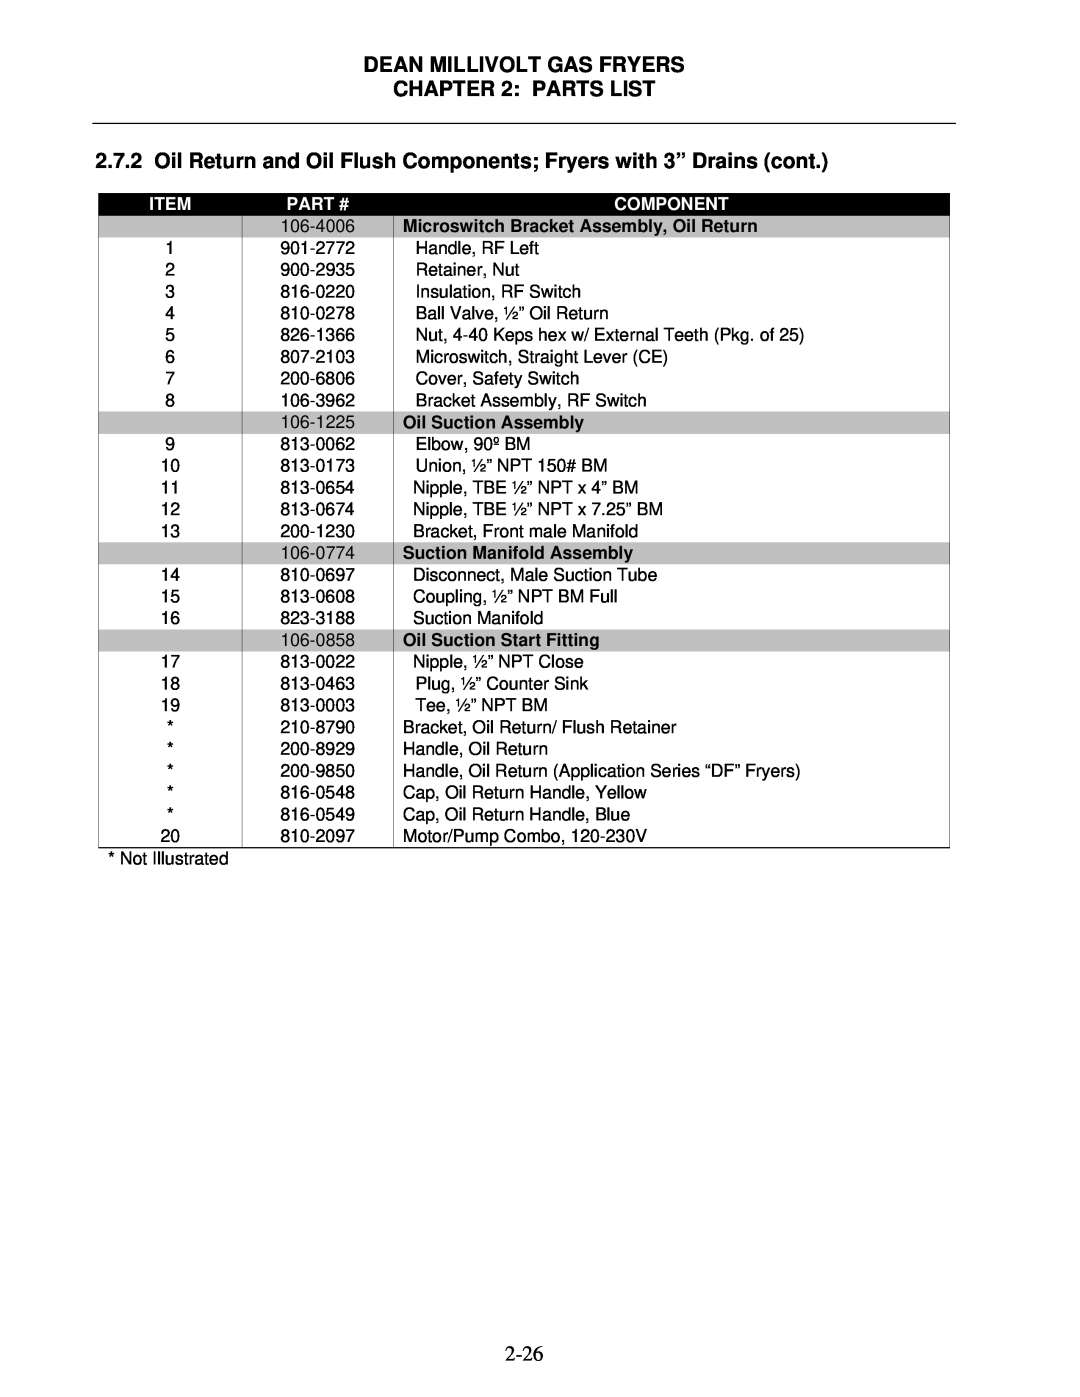 Frymaster Super Marathon Series Dean Millivolt Gas Fryers : Parts List, Item, Part #, Component, Oil Suction Assembly 